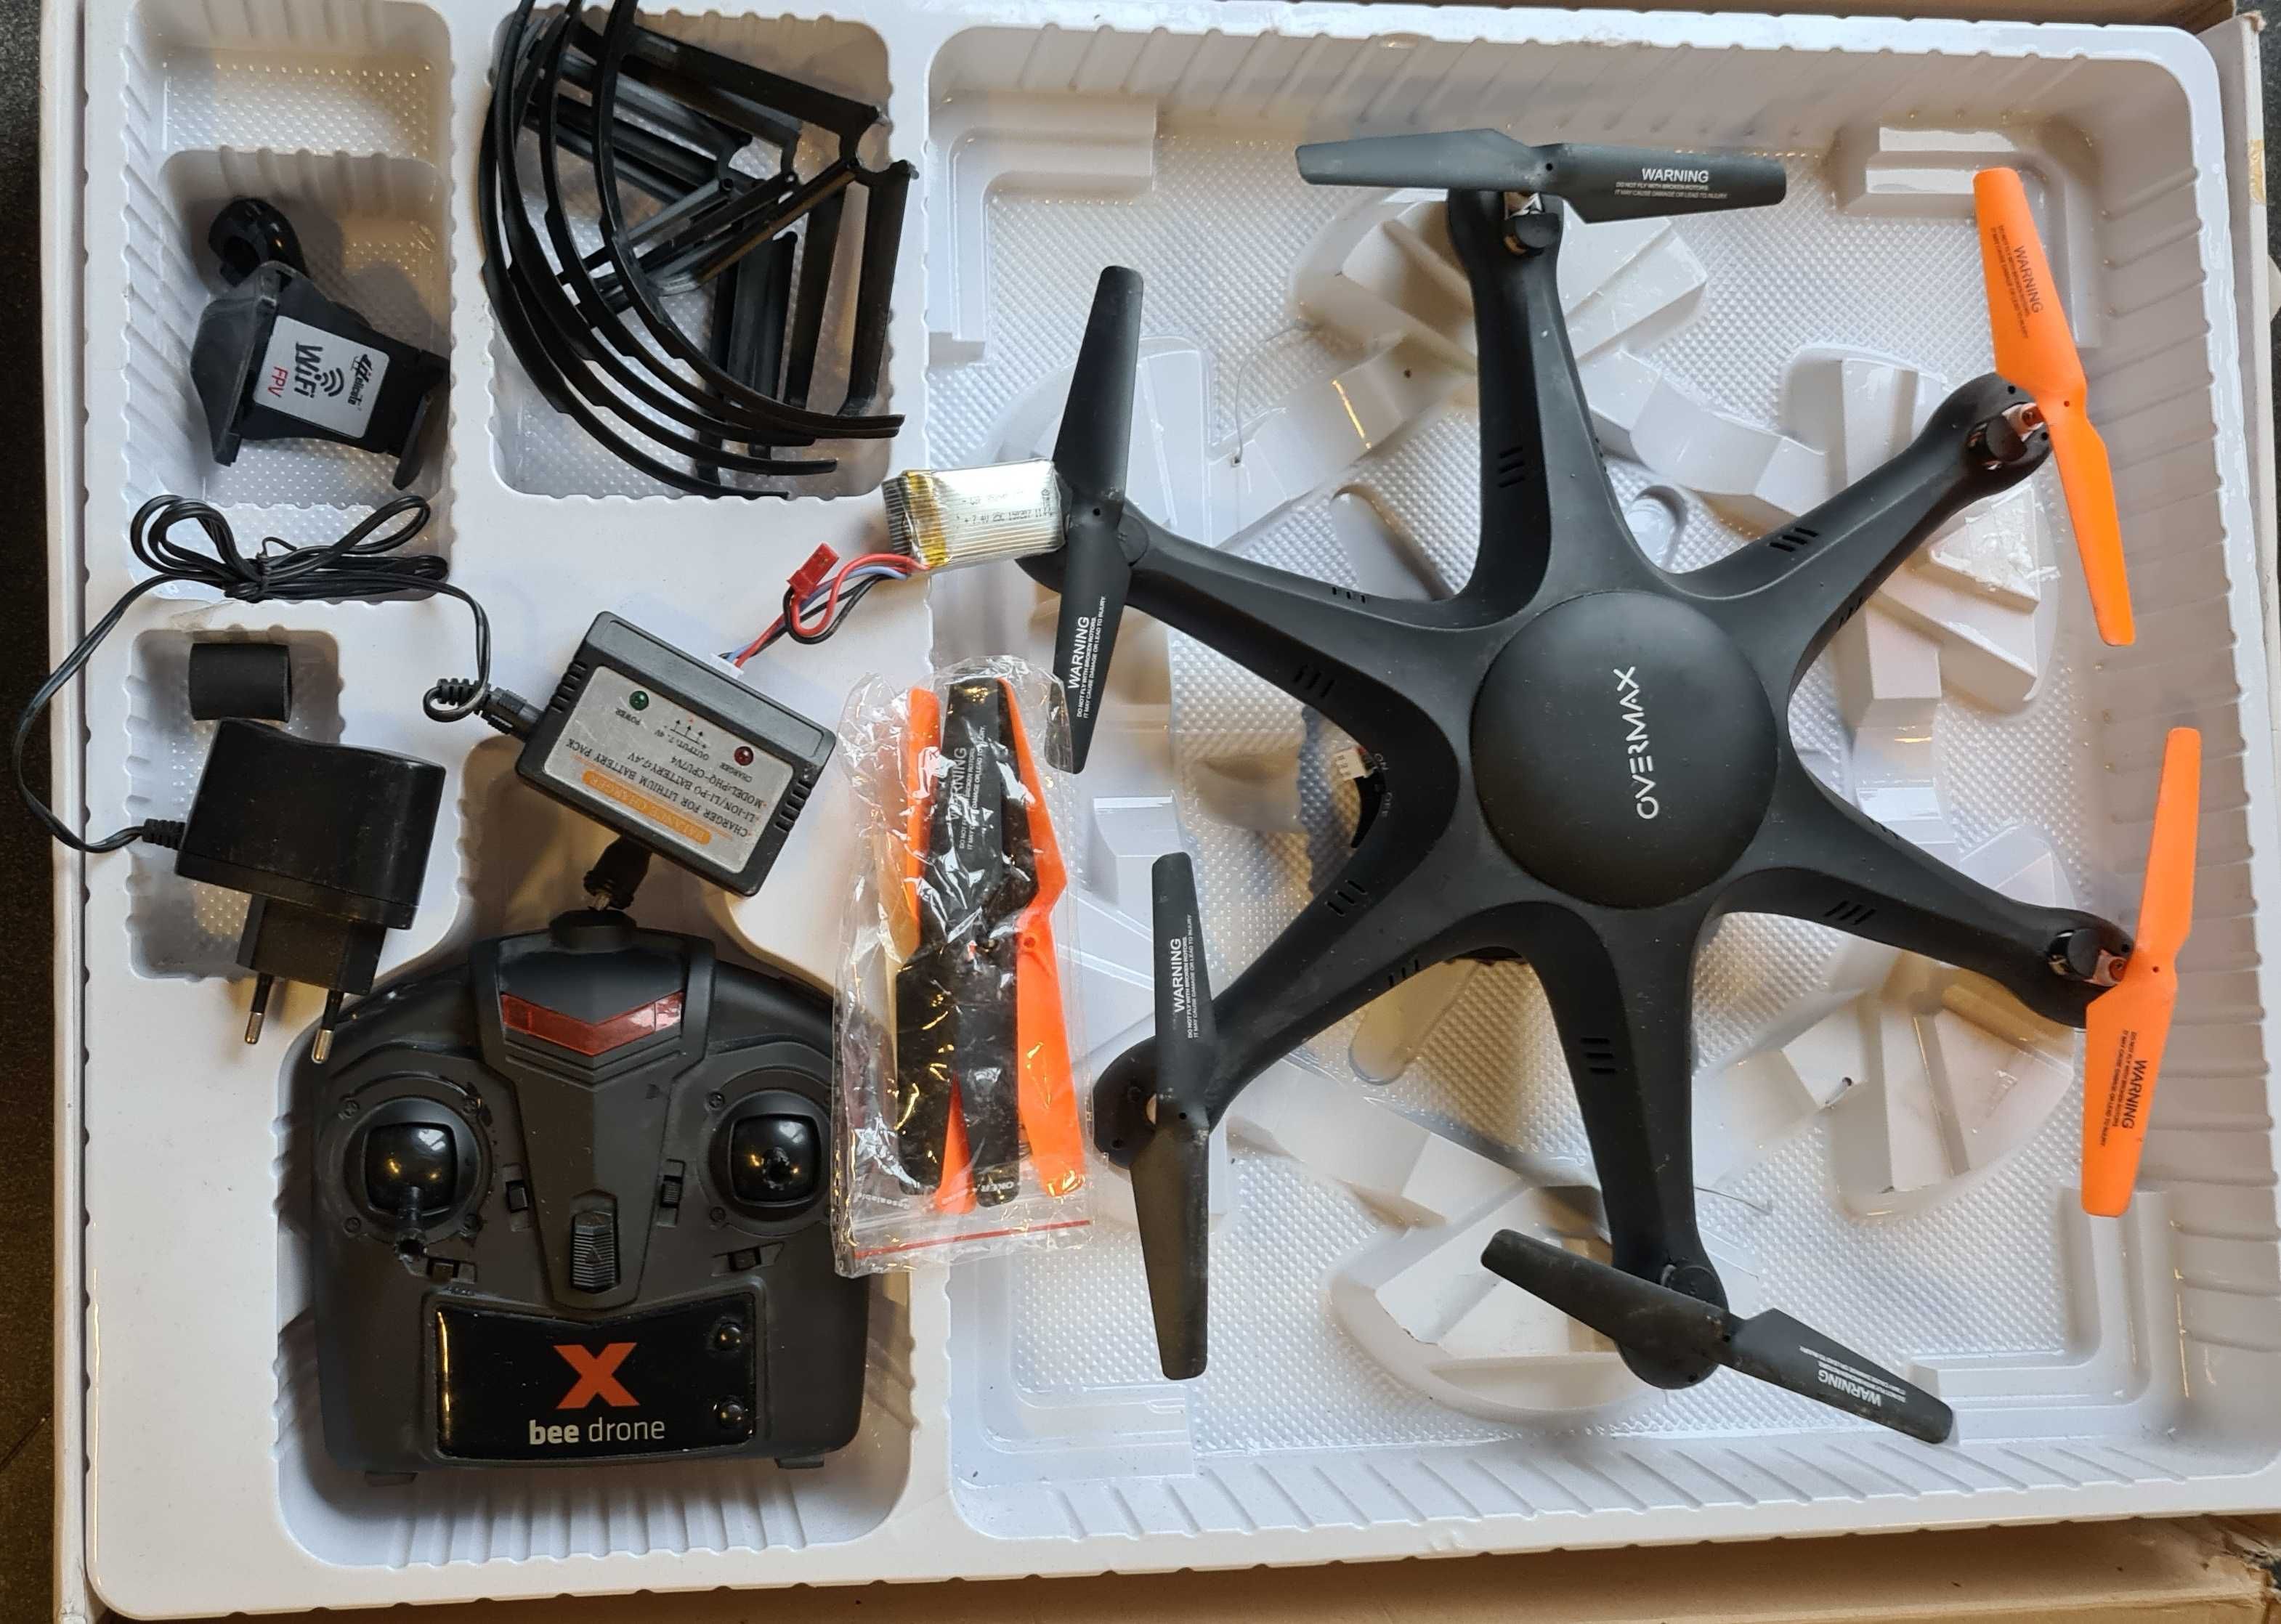 Dron X-bee drone 6,1 Overmax, zabawka zdalnie sterowana